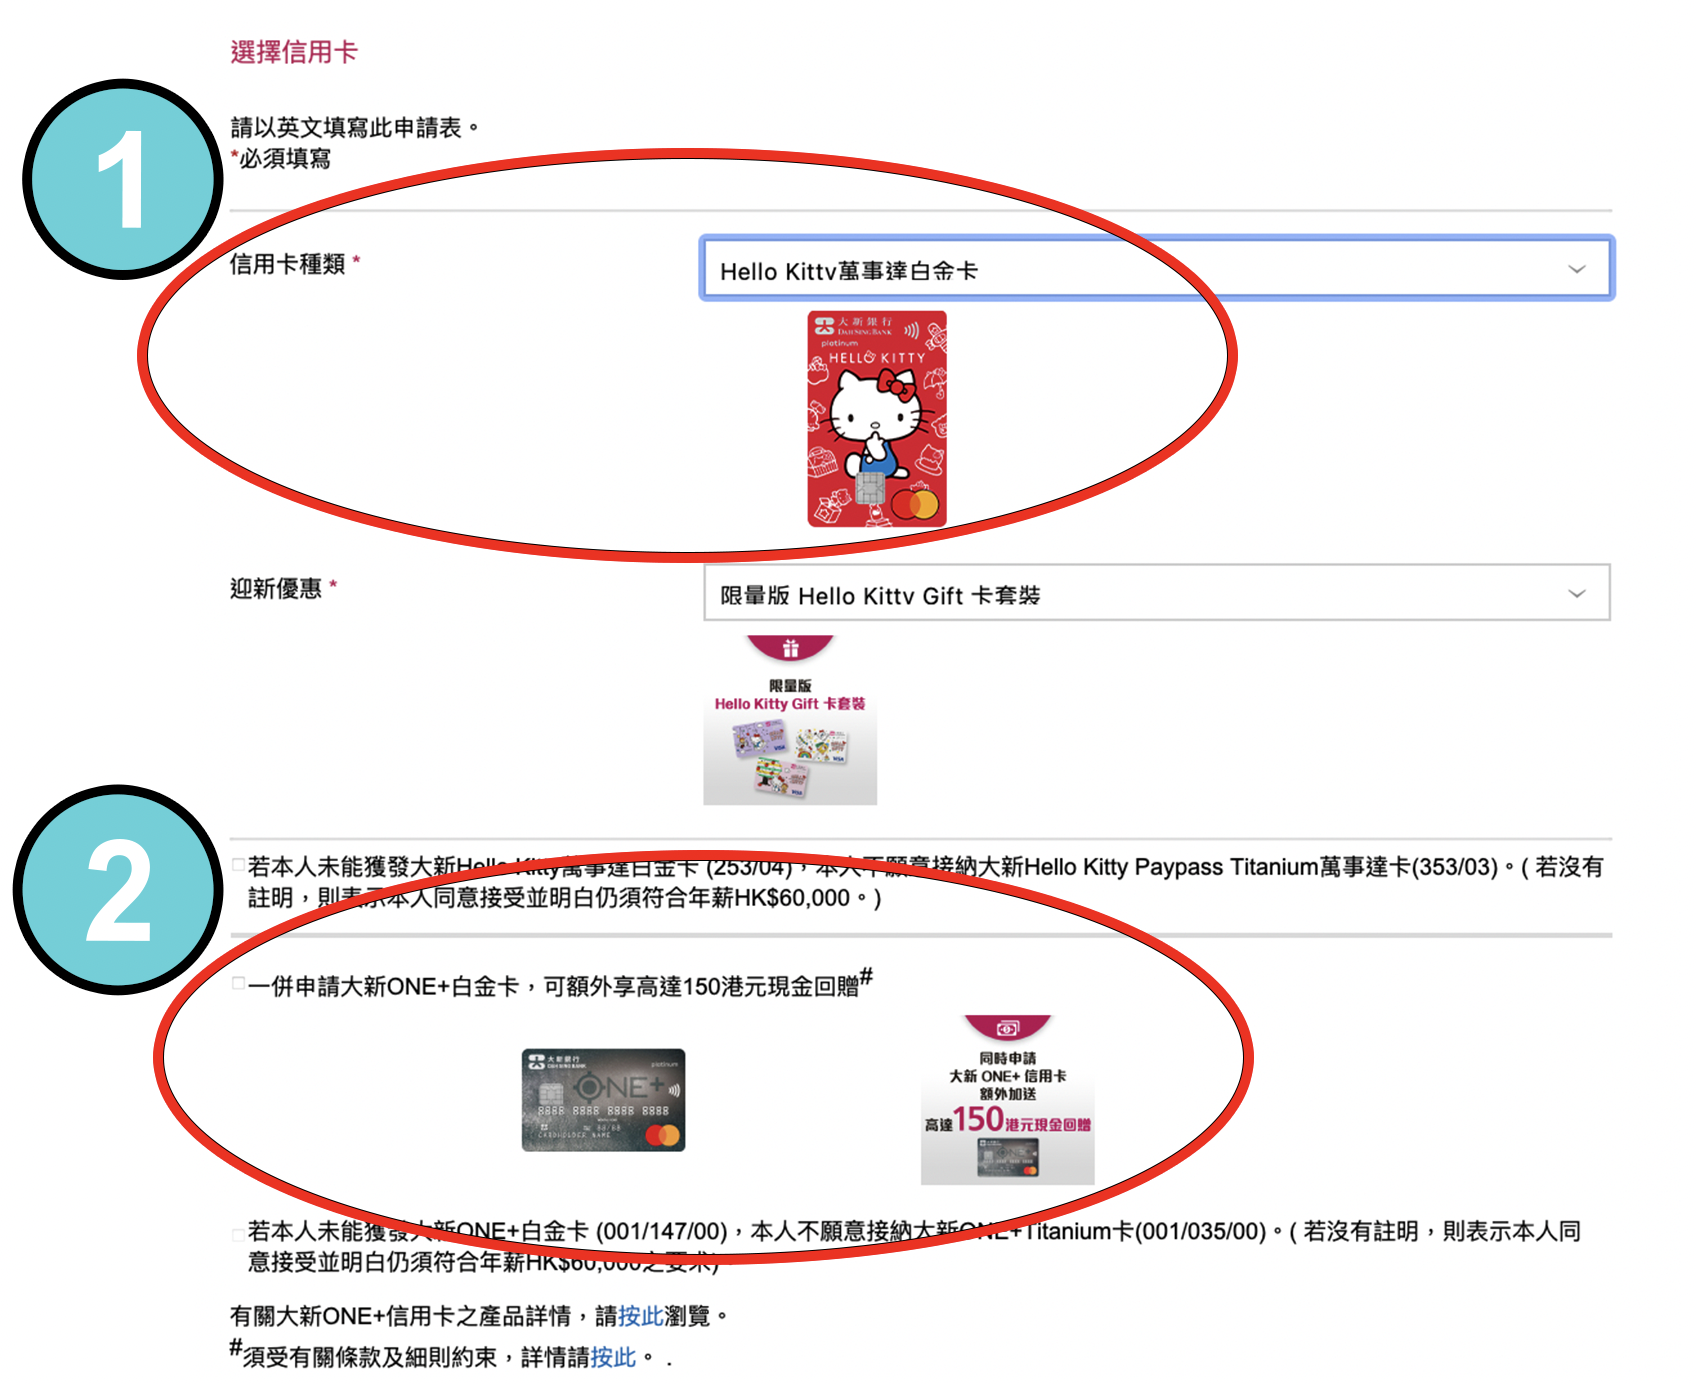 【大新Hello Kitty萬事達白金卡雙卡優惠】經里先生申請Hello Kitty卡及ONE+卡送HK$500 Apple禮品卡/超市禮券！每簽HK$1即享1積分獎賞！用信用卡八達通自動增值都有積分獎賞！